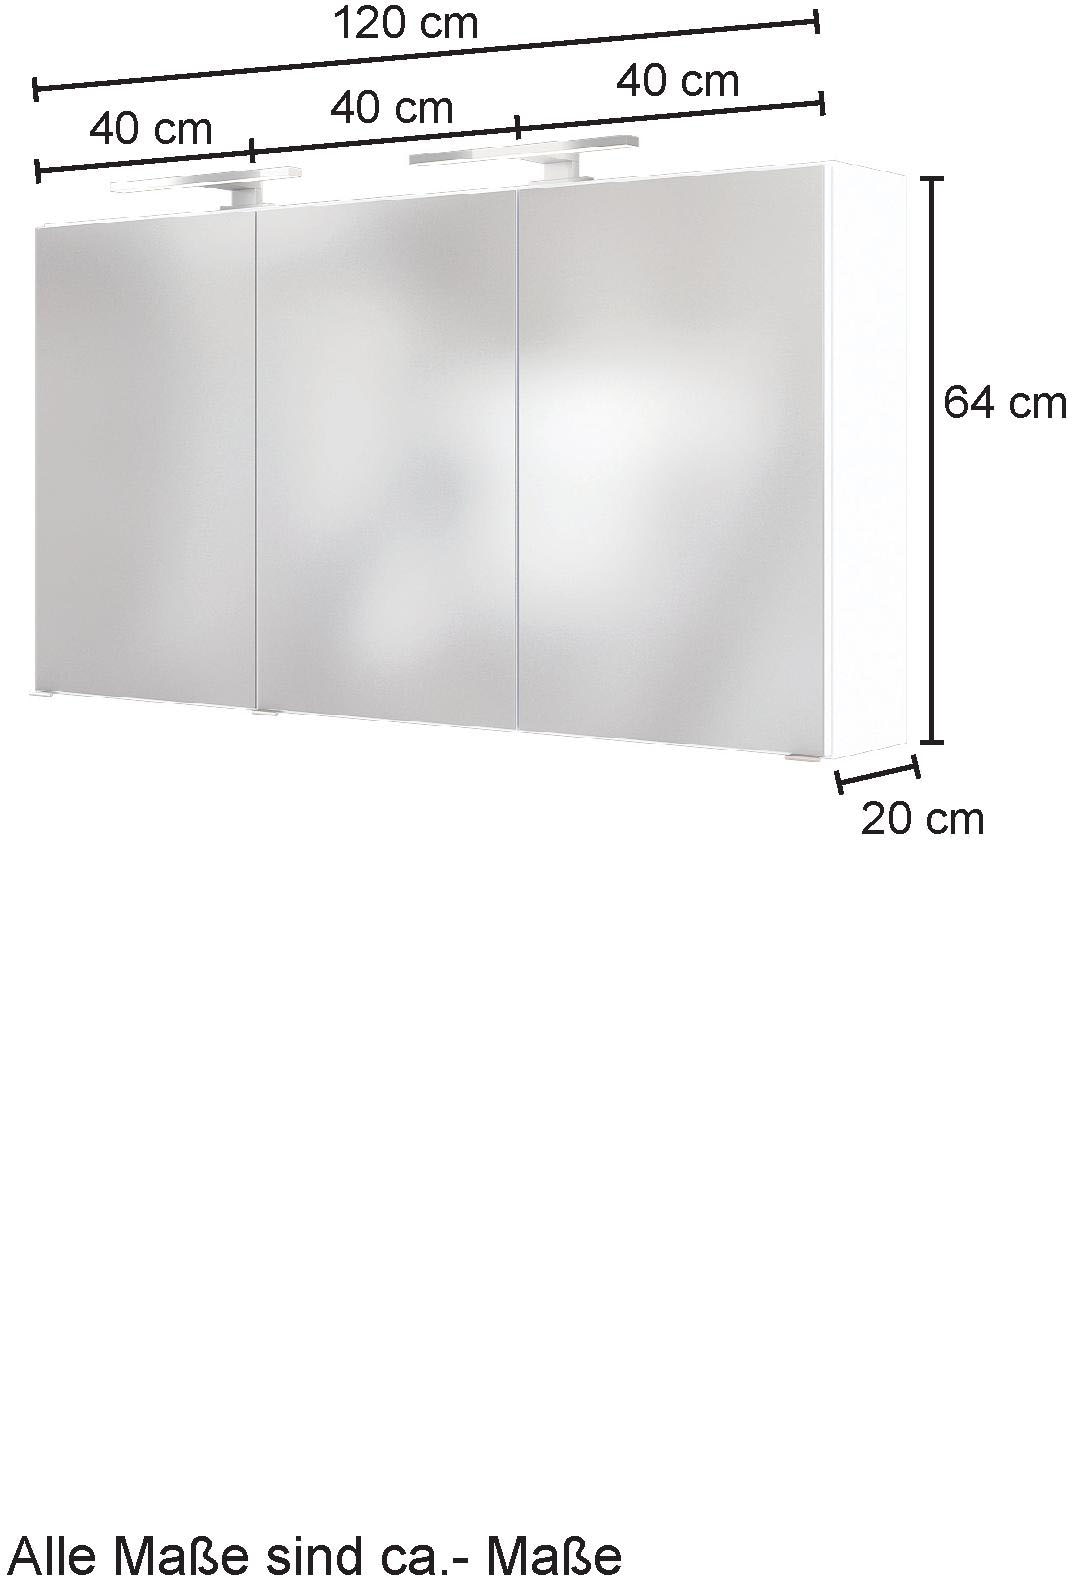 HELD MÖBEL Spiegelschrank »Baabe«, 120 cm breit, inkl. Beleuchtung, Schalter und Steckdose